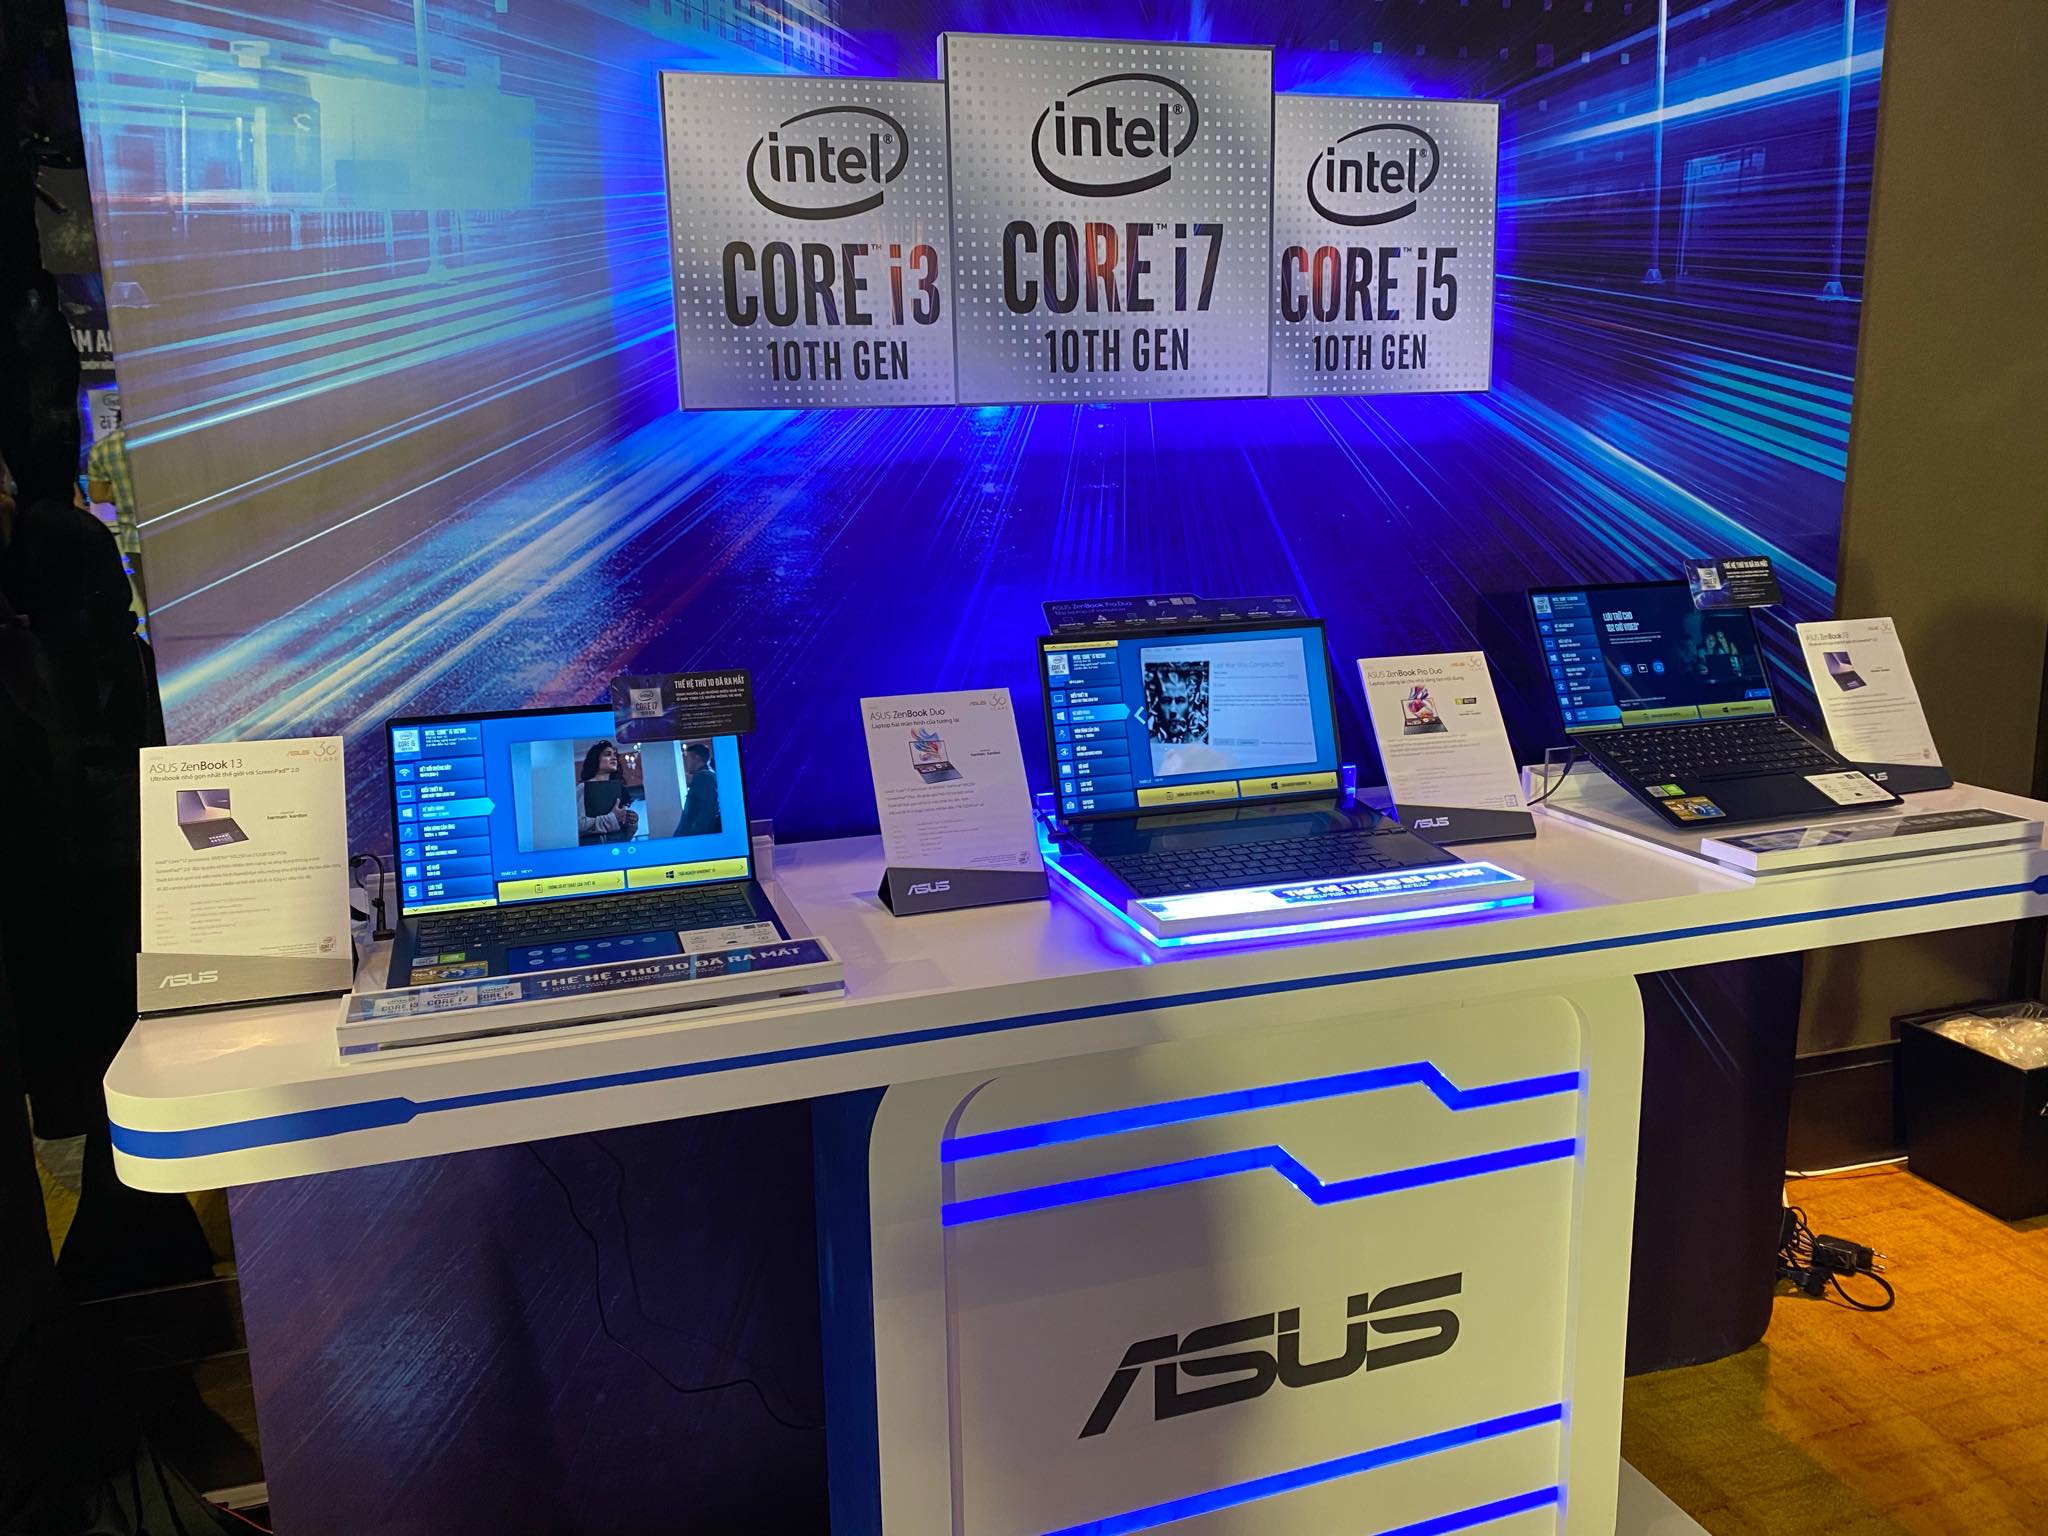 Thế Giới Di Động cùng Intel ra mắt vi xử lý Intel Core thế hệ thứ 10 tại Việt Nam